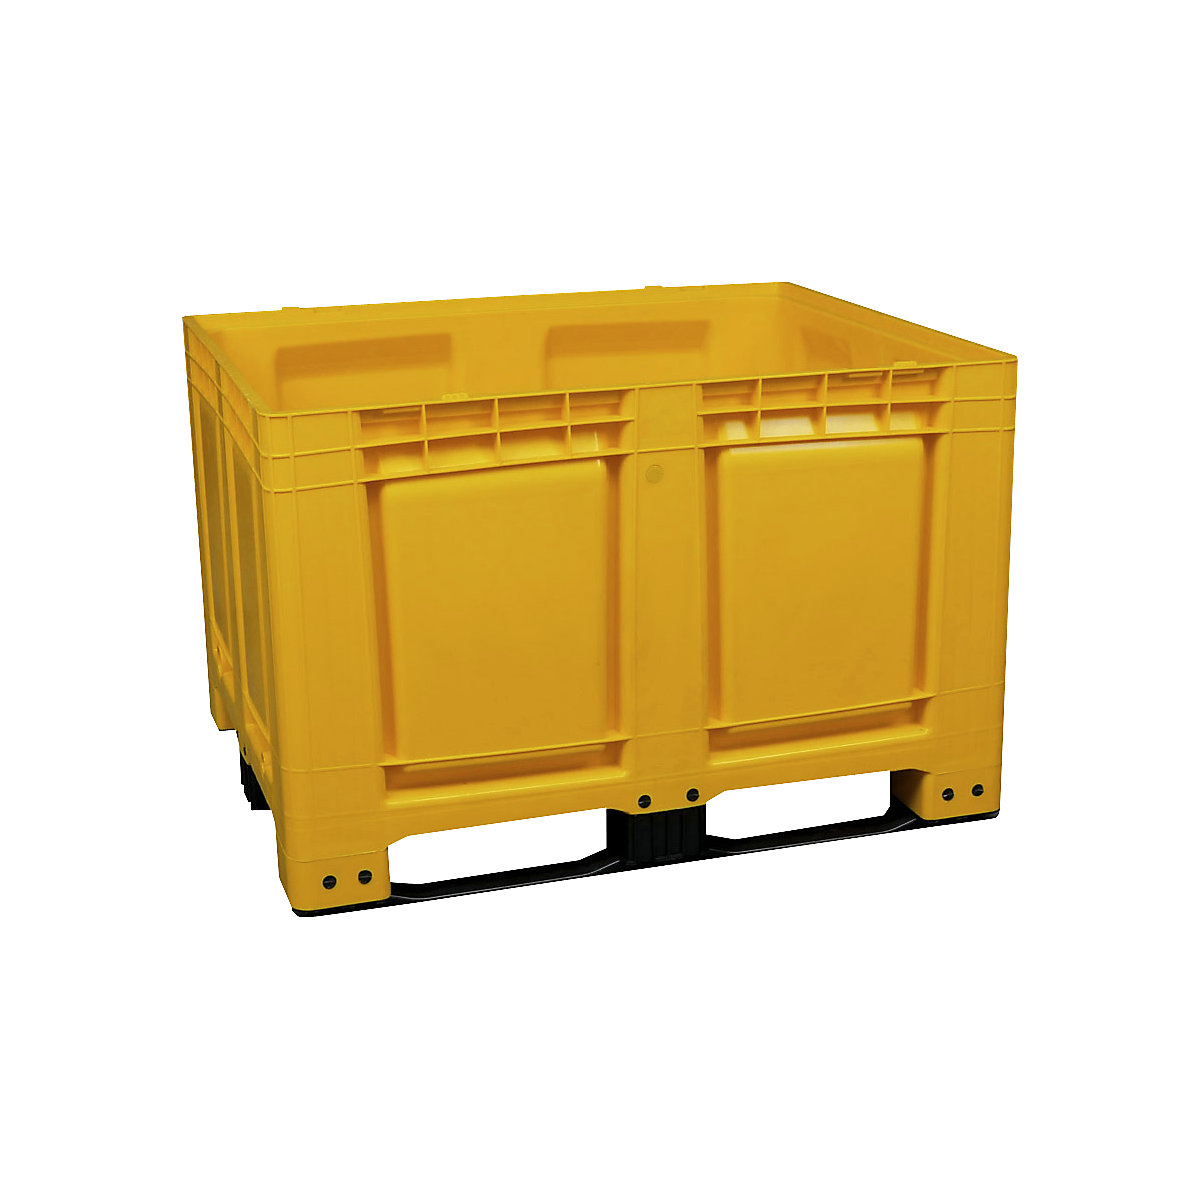 Palettenbehälter, aus HDPE, LxBxH 1200 x 1000 x 790 mm, 3 Kufen, geschlossen, gelb